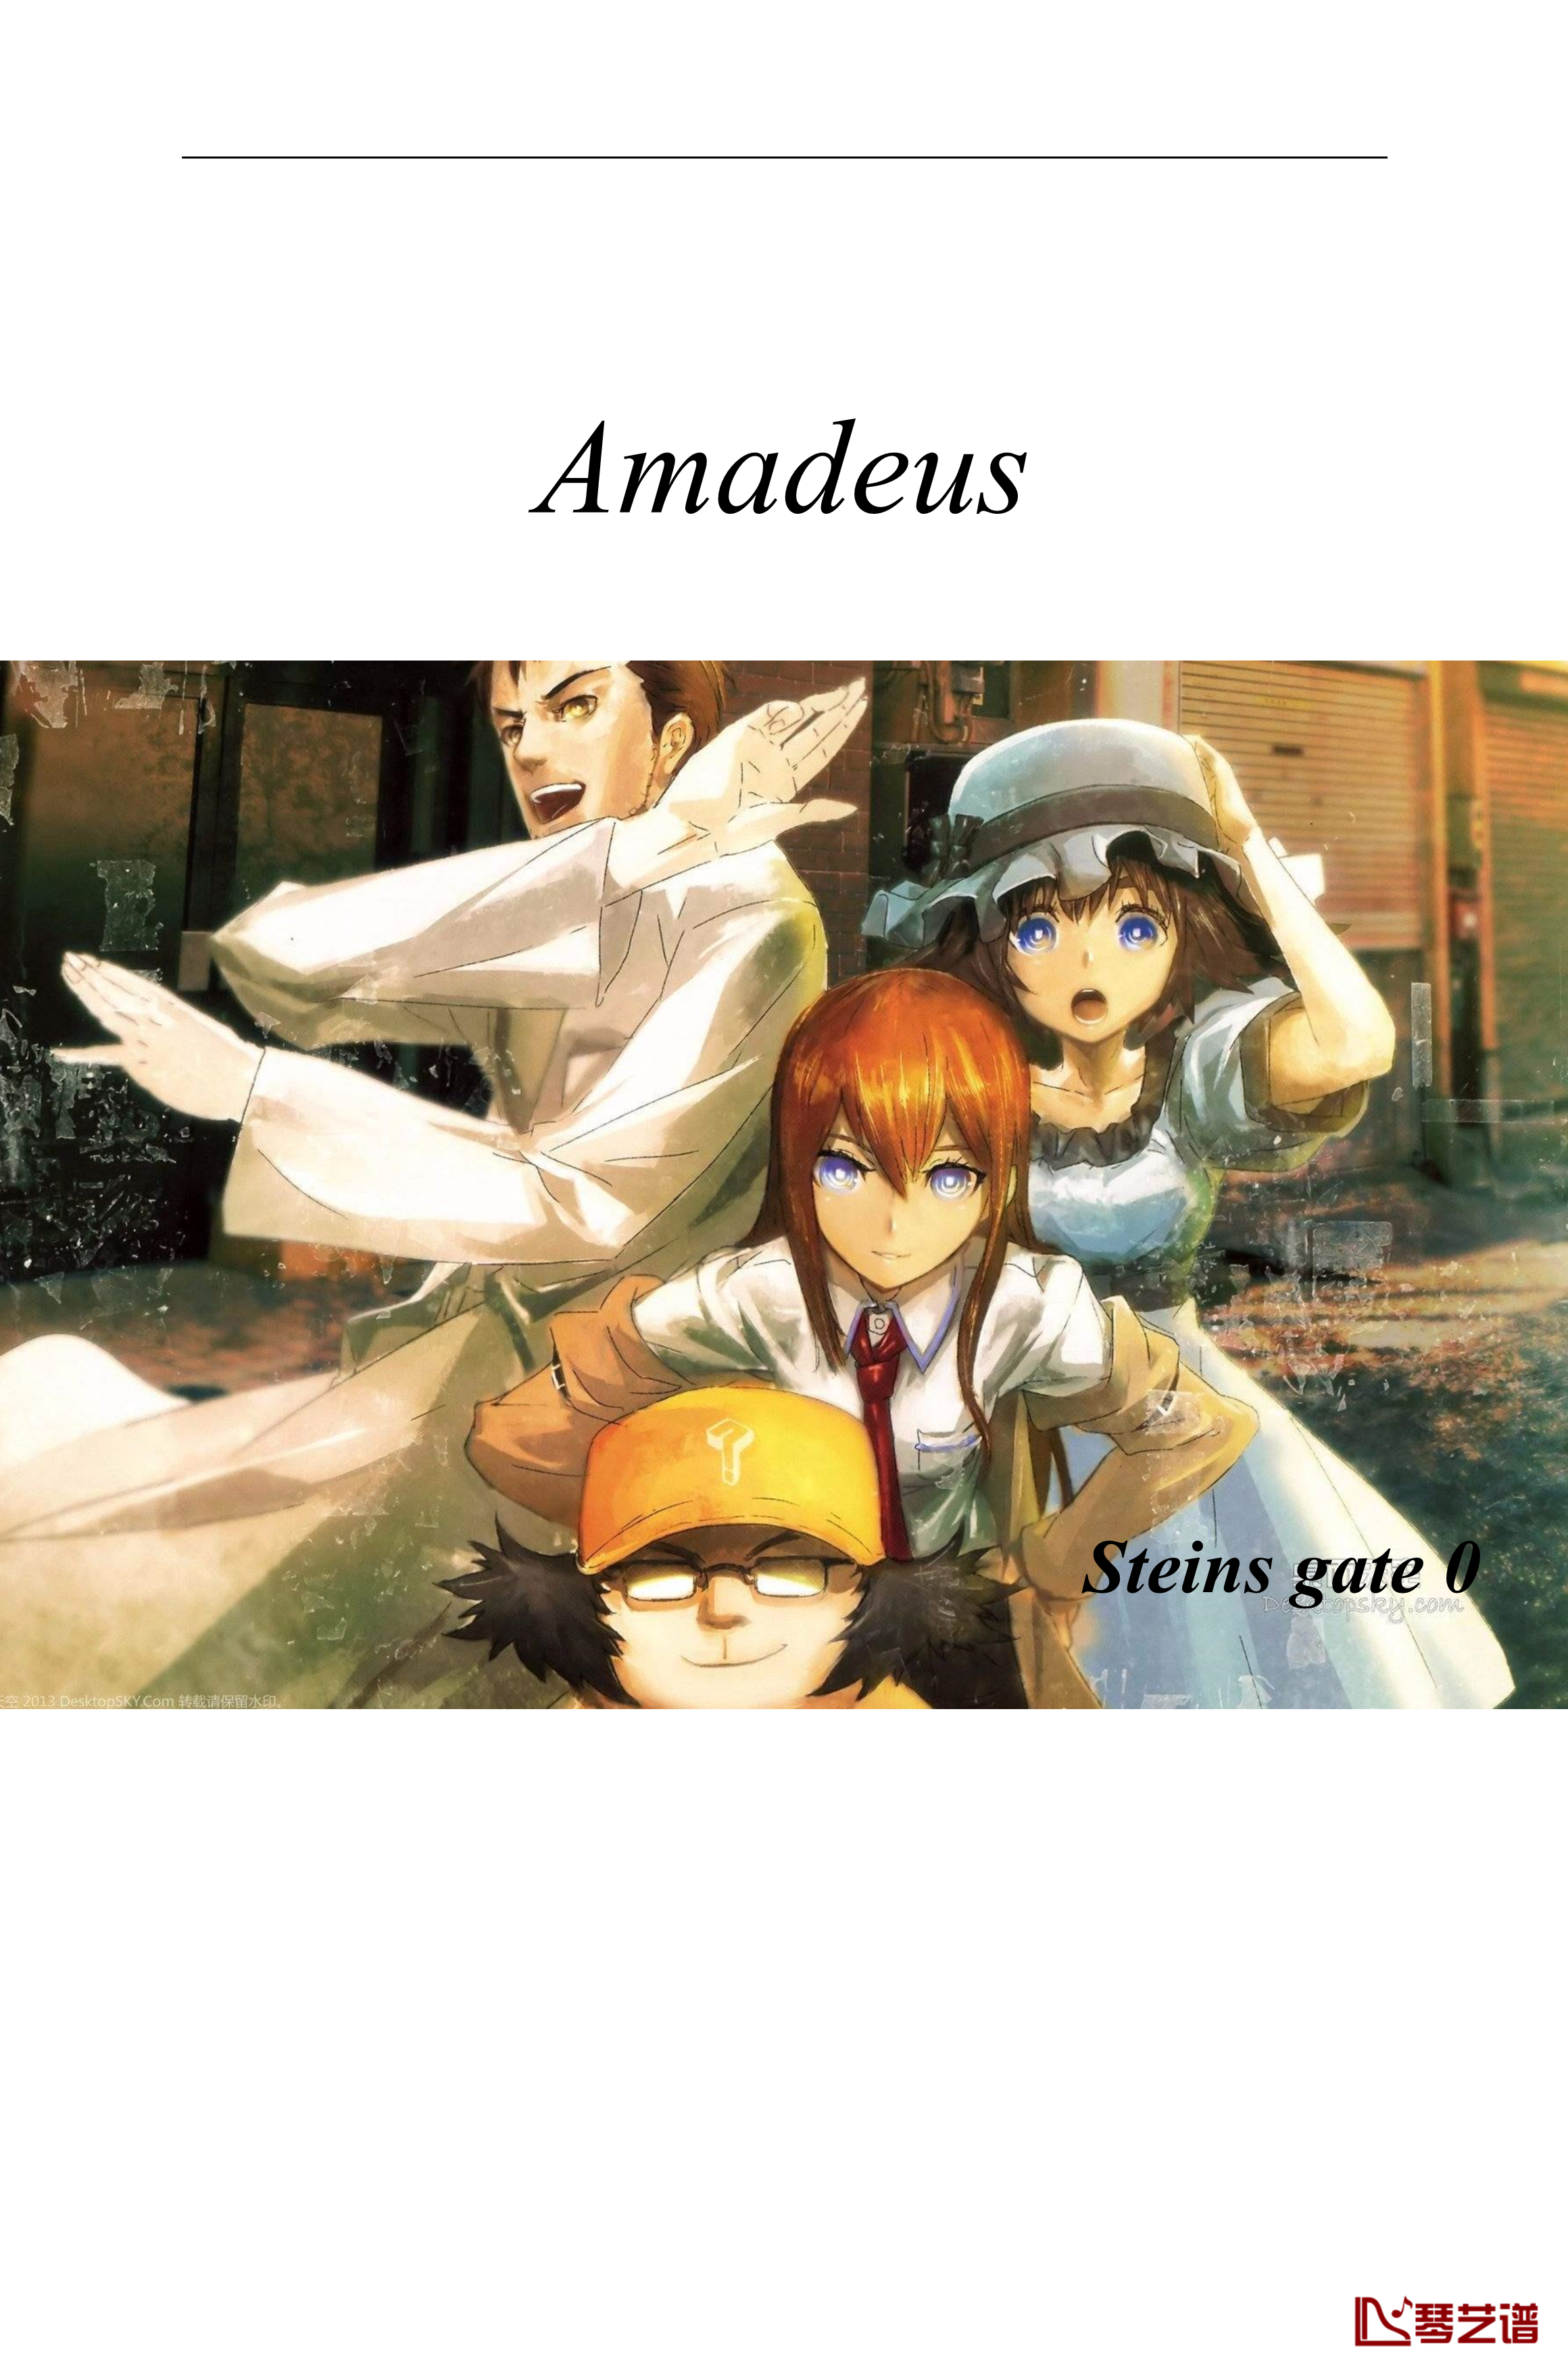 命运石之门0钢琴谱-OP(Steins gate 0)Amadeus-full-ver.-伊藤香奈子1